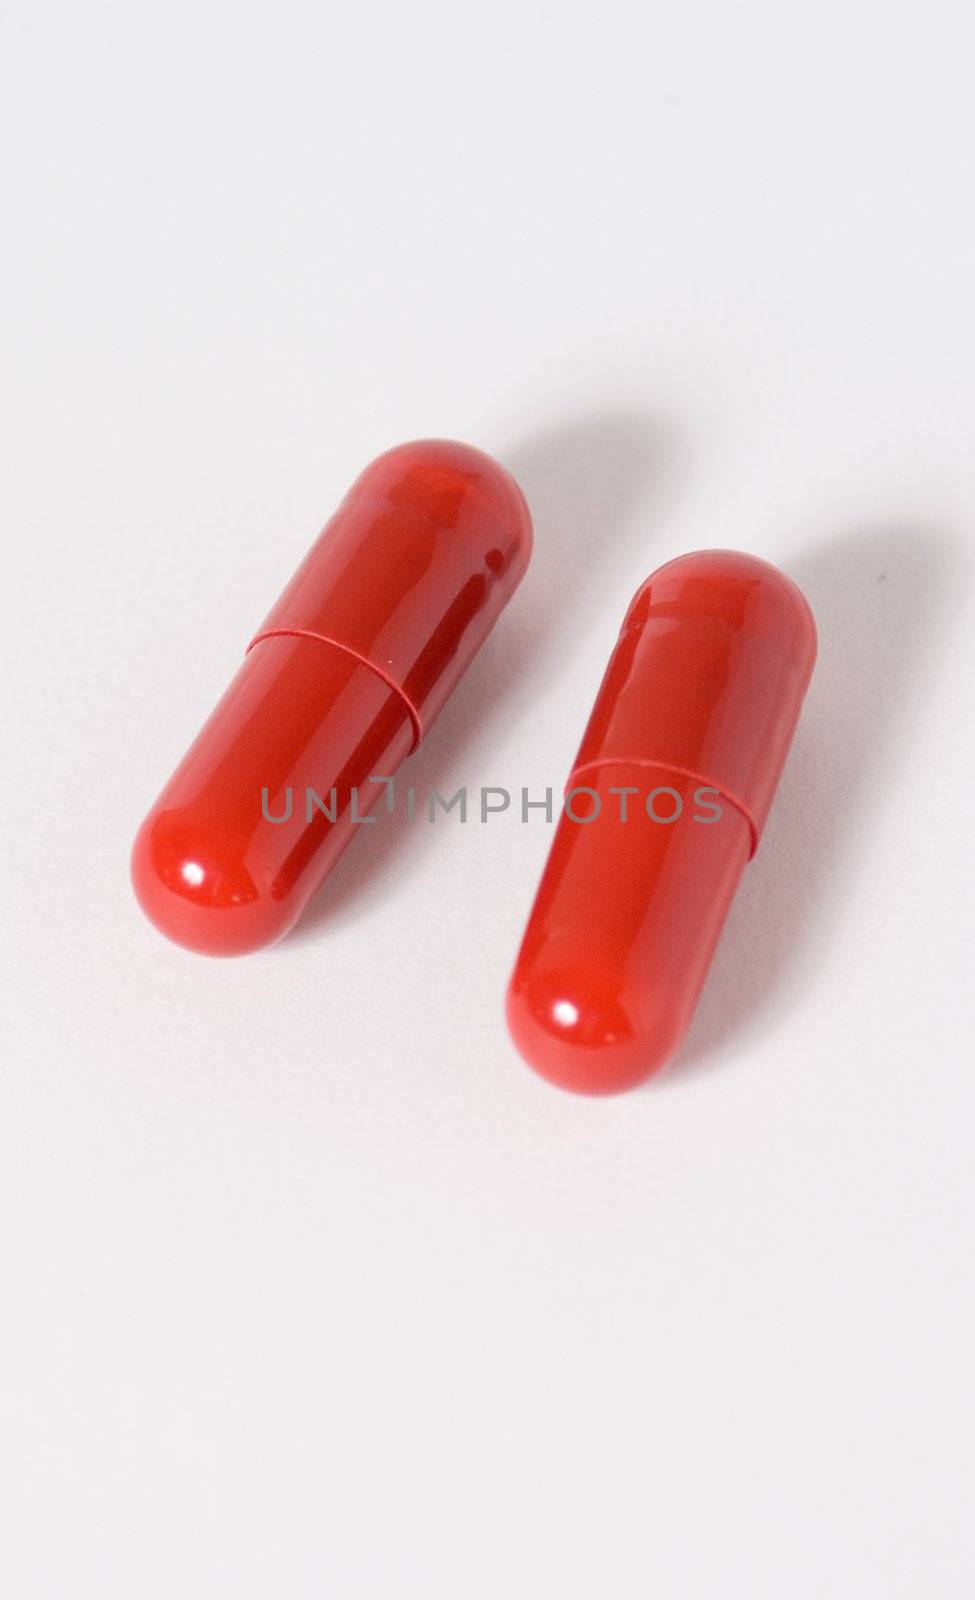 Red capsules by olgaolga